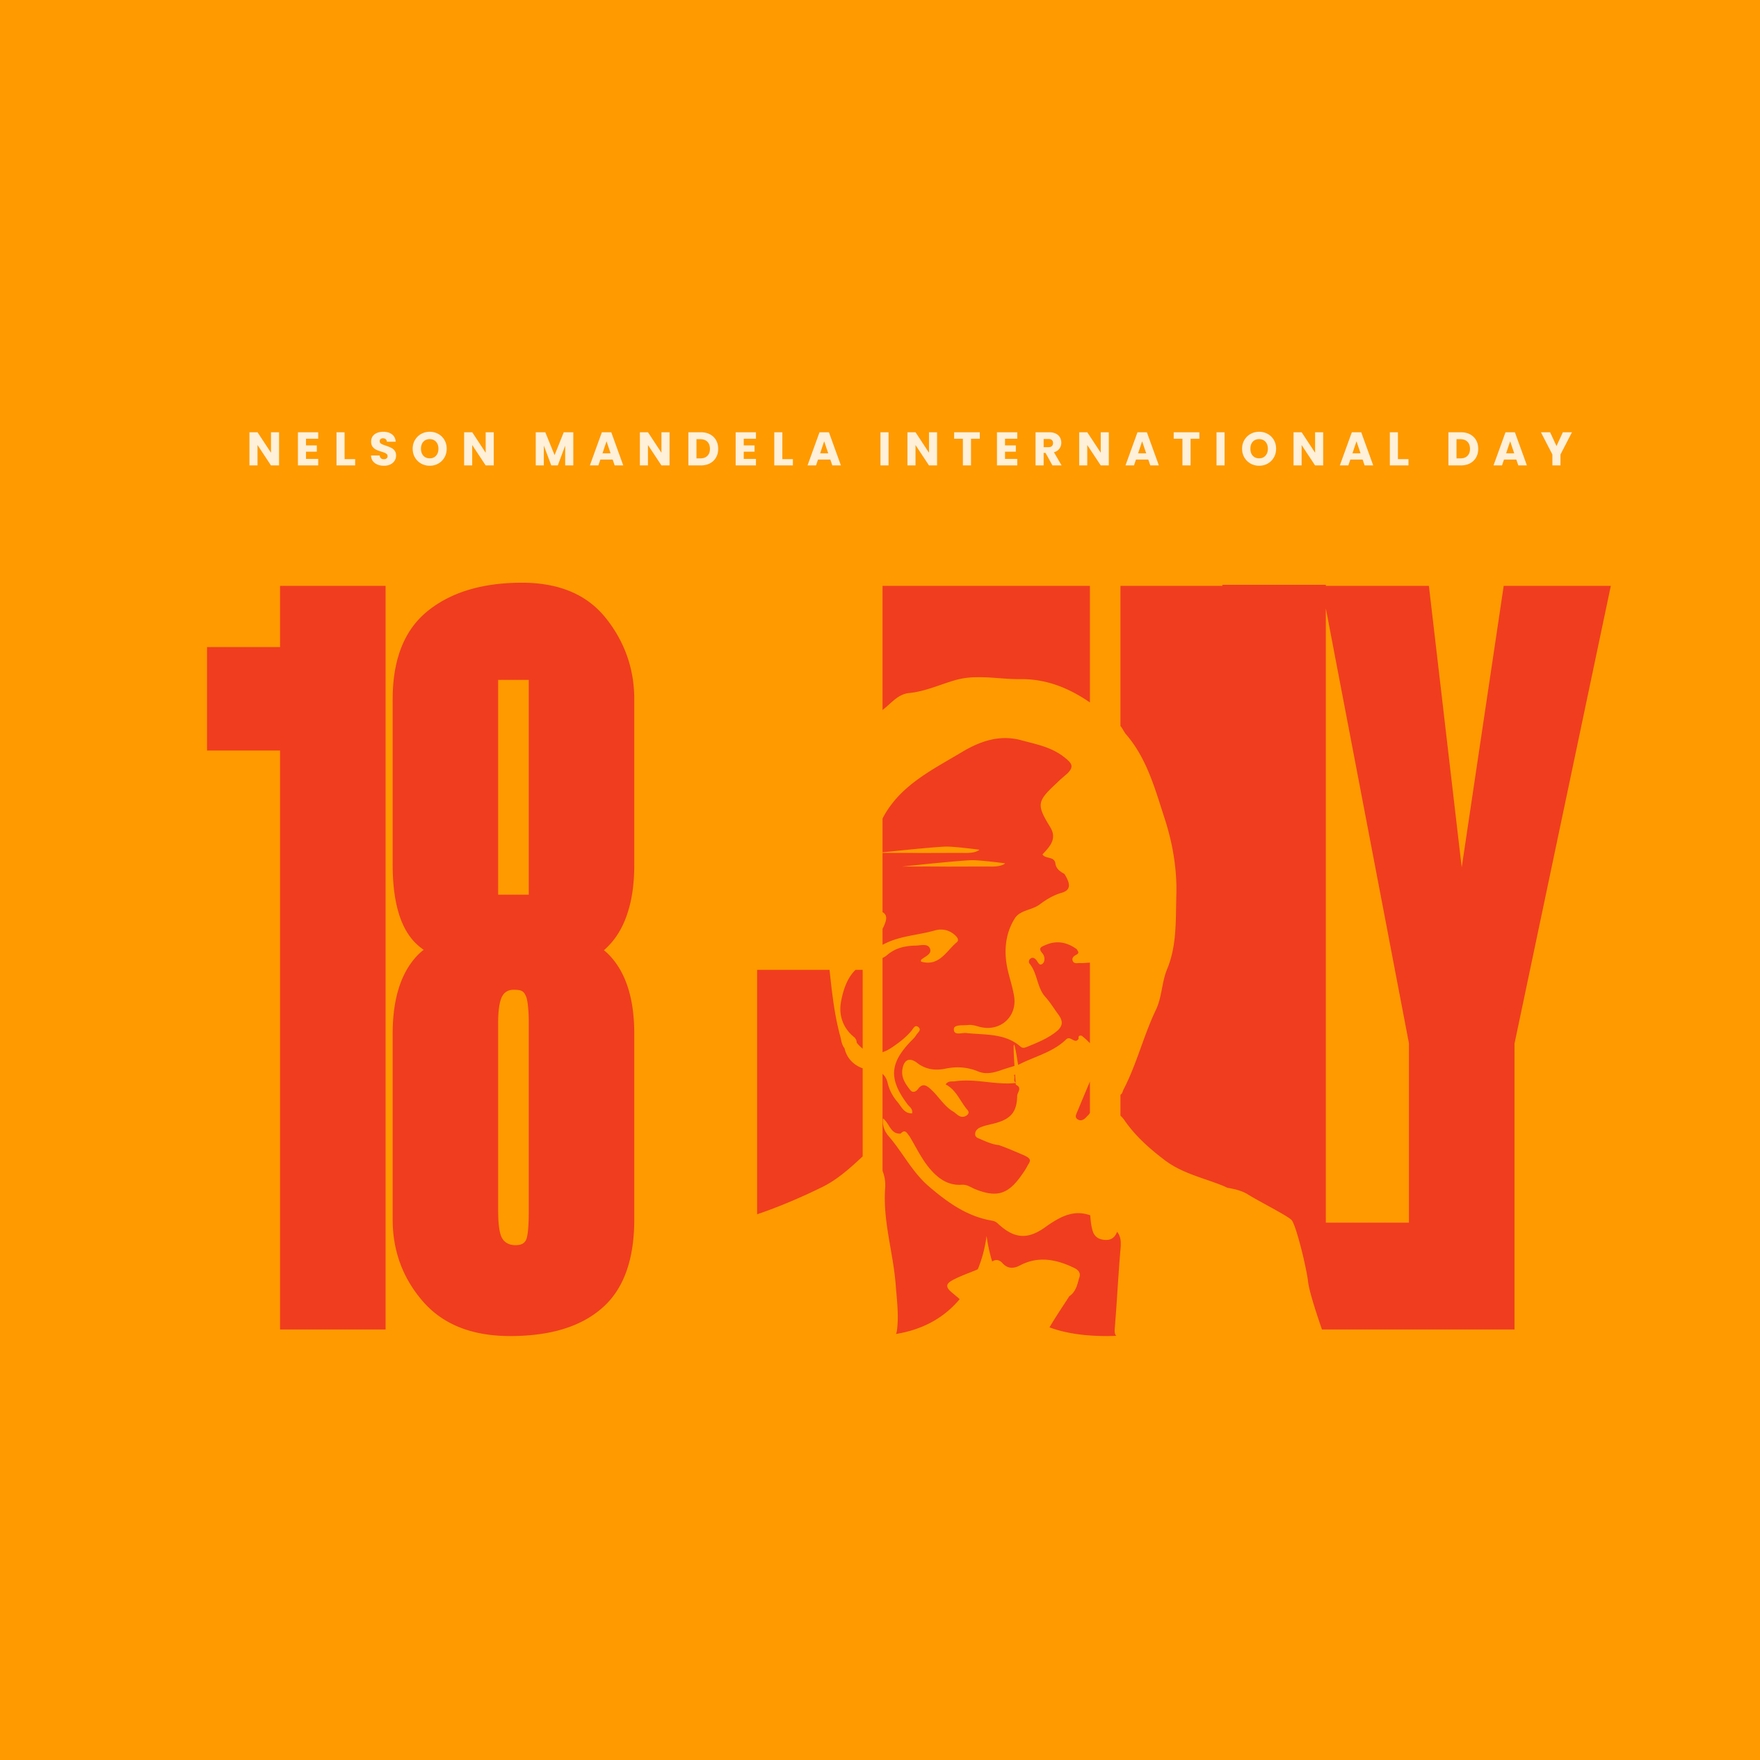 Nelson Mandela International Day FB Post